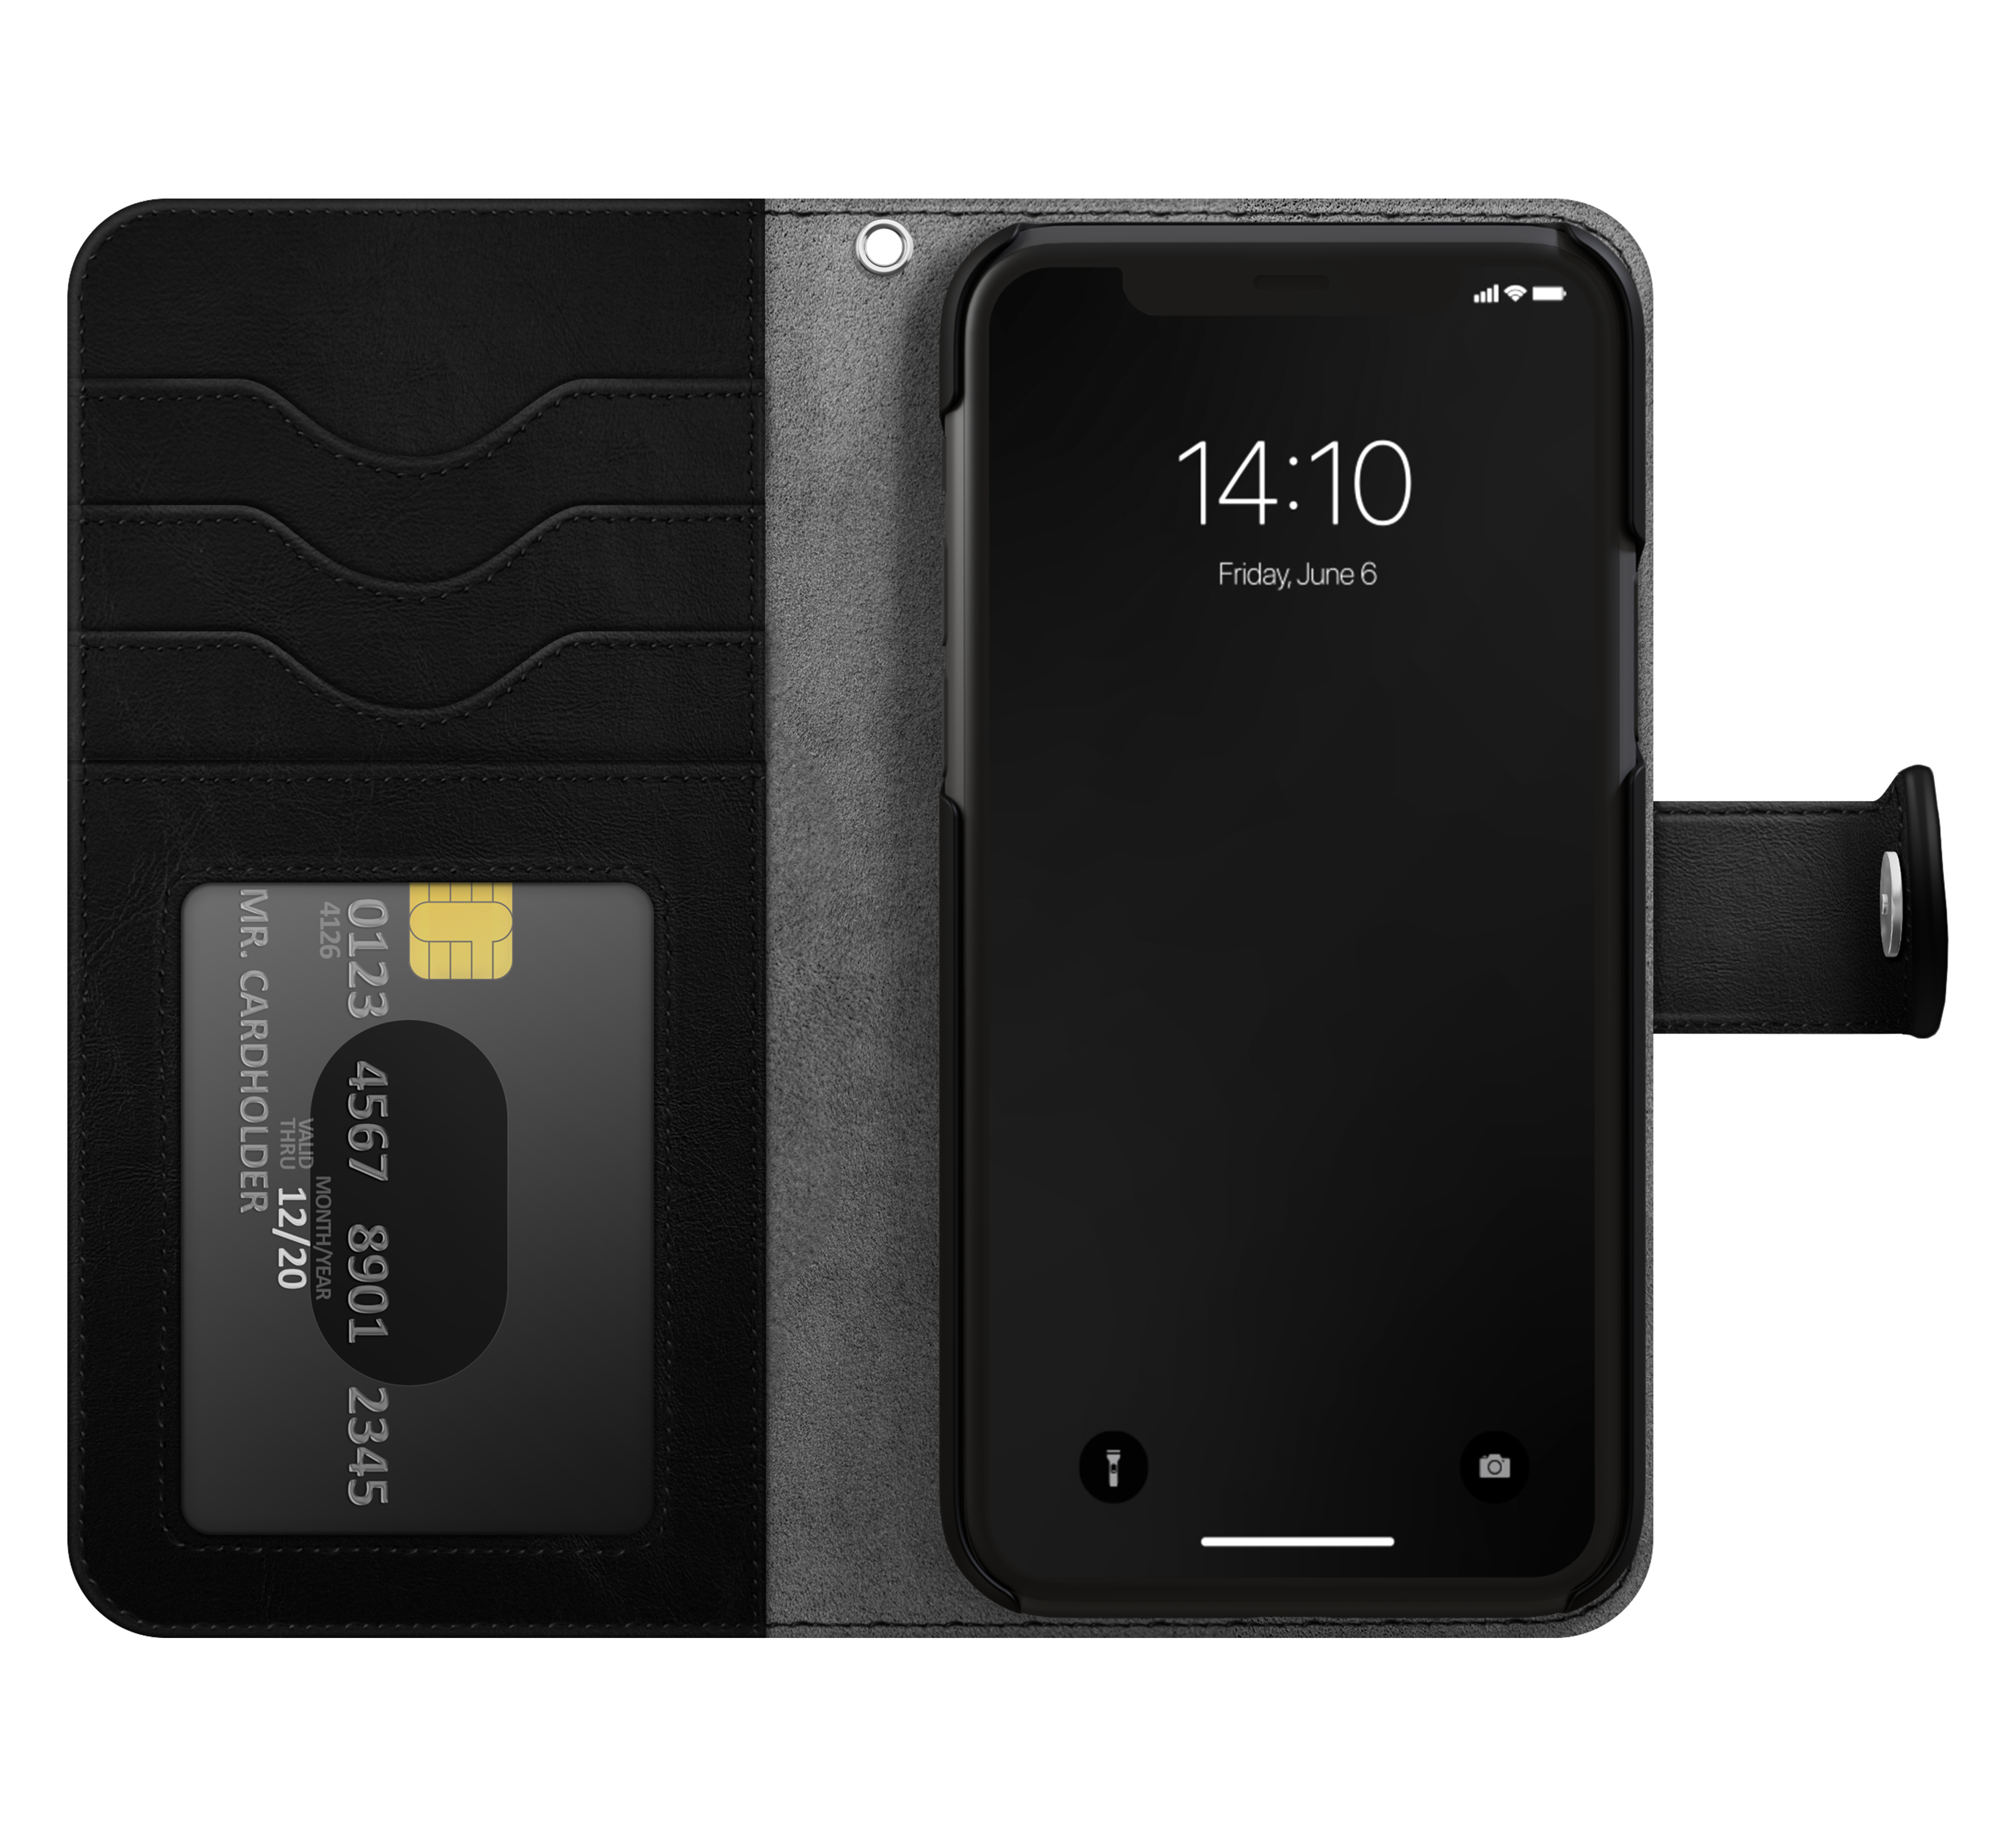 Étui portefeuille Magnet Wallet+ iPhone 15 Pro, Black